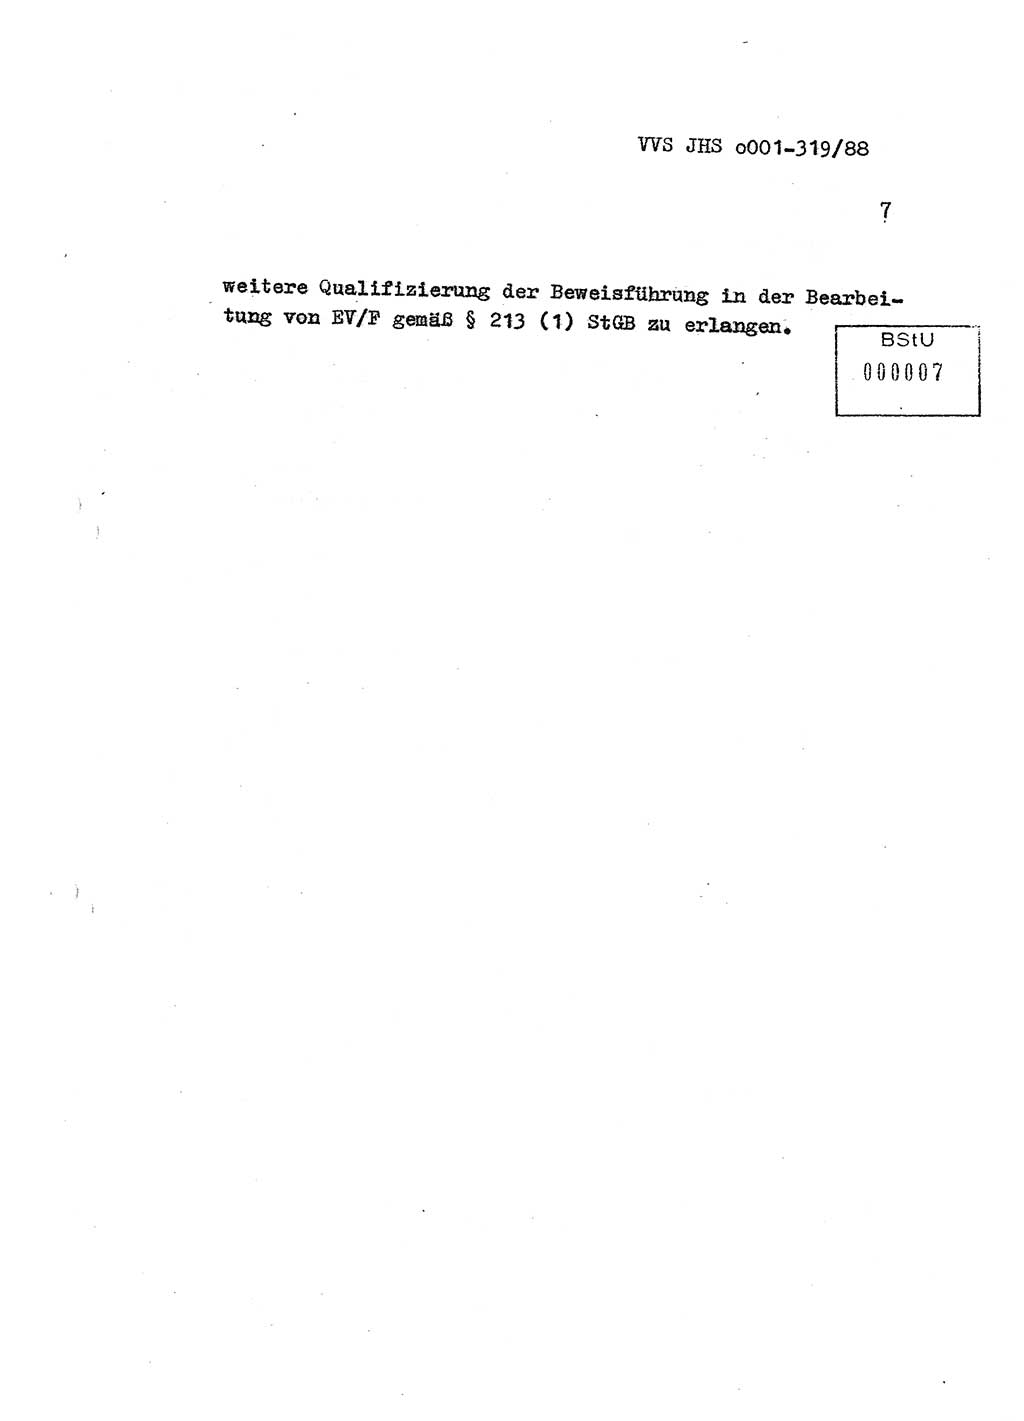 Diplomarbeit Offiziersschüler Holger Zirnstein (HA Ⅸ/9), Ministerium für Staatssicherheit (MfS) [Deutsche Demokratische Republik (DDR)], Juristische Hochschule (JHS), Vertrauliche Verschlußsache (VVS) o001-319/88, Potsdam 1988, Blatt 7 (Dipl.-Arb. MfS DDR JHS VVS o001-319/88 1988, Bl. 7)